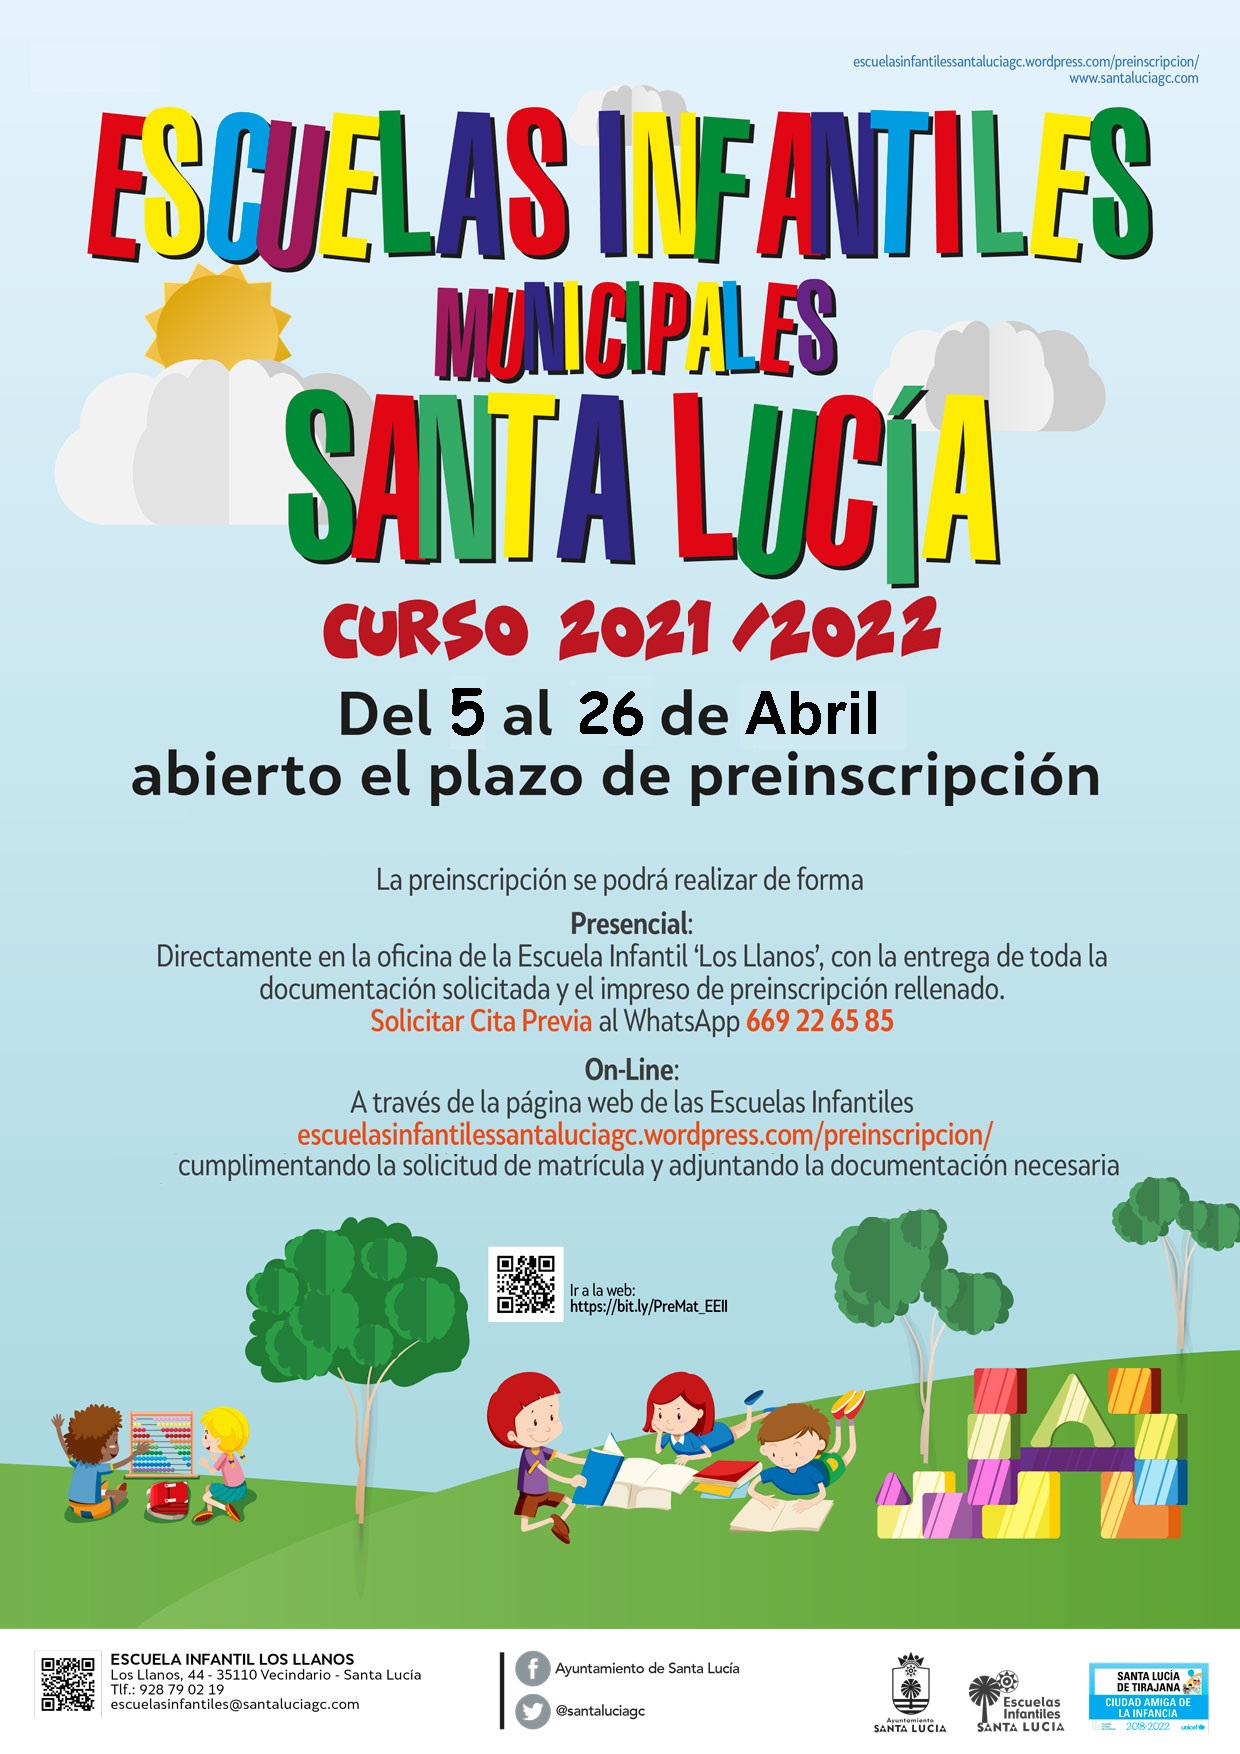  Las Escuelas Infantiles de Santa Lucía abren el plazo de preinscripción del 5 al 26 de abril